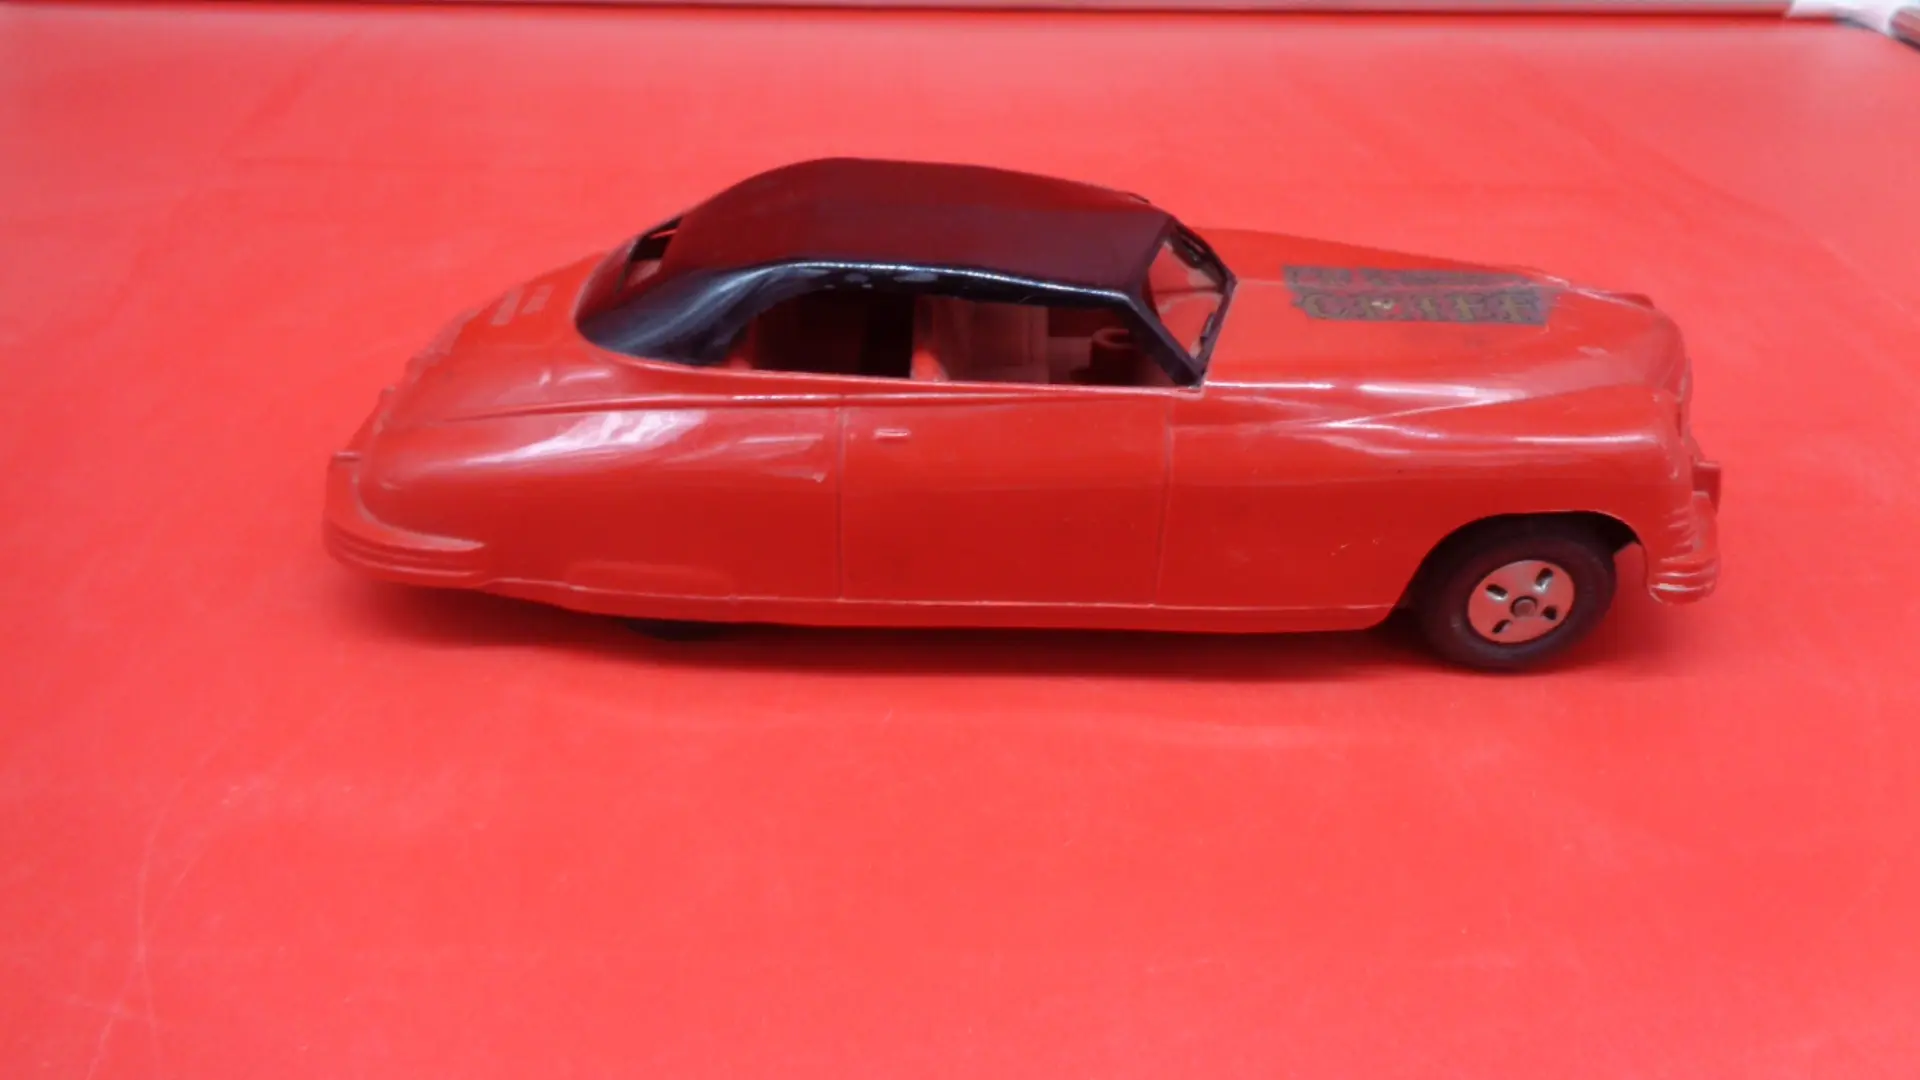 Display of Vintage Red car plastic toy